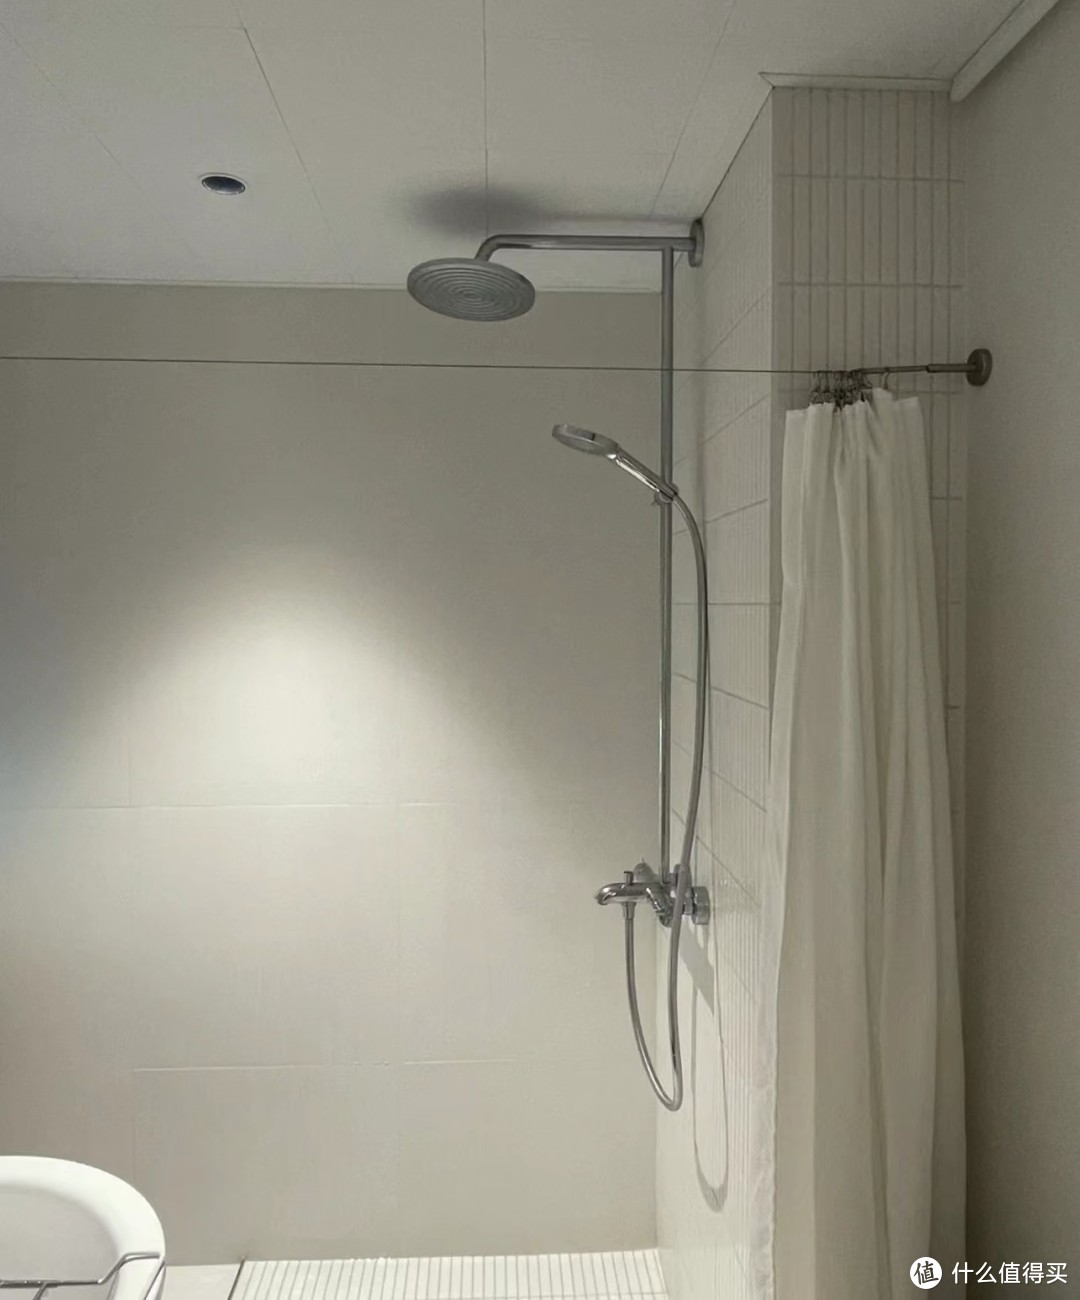 淋浴房—装修最没必要投入的地方，替代方案比它好用，还比它便宜